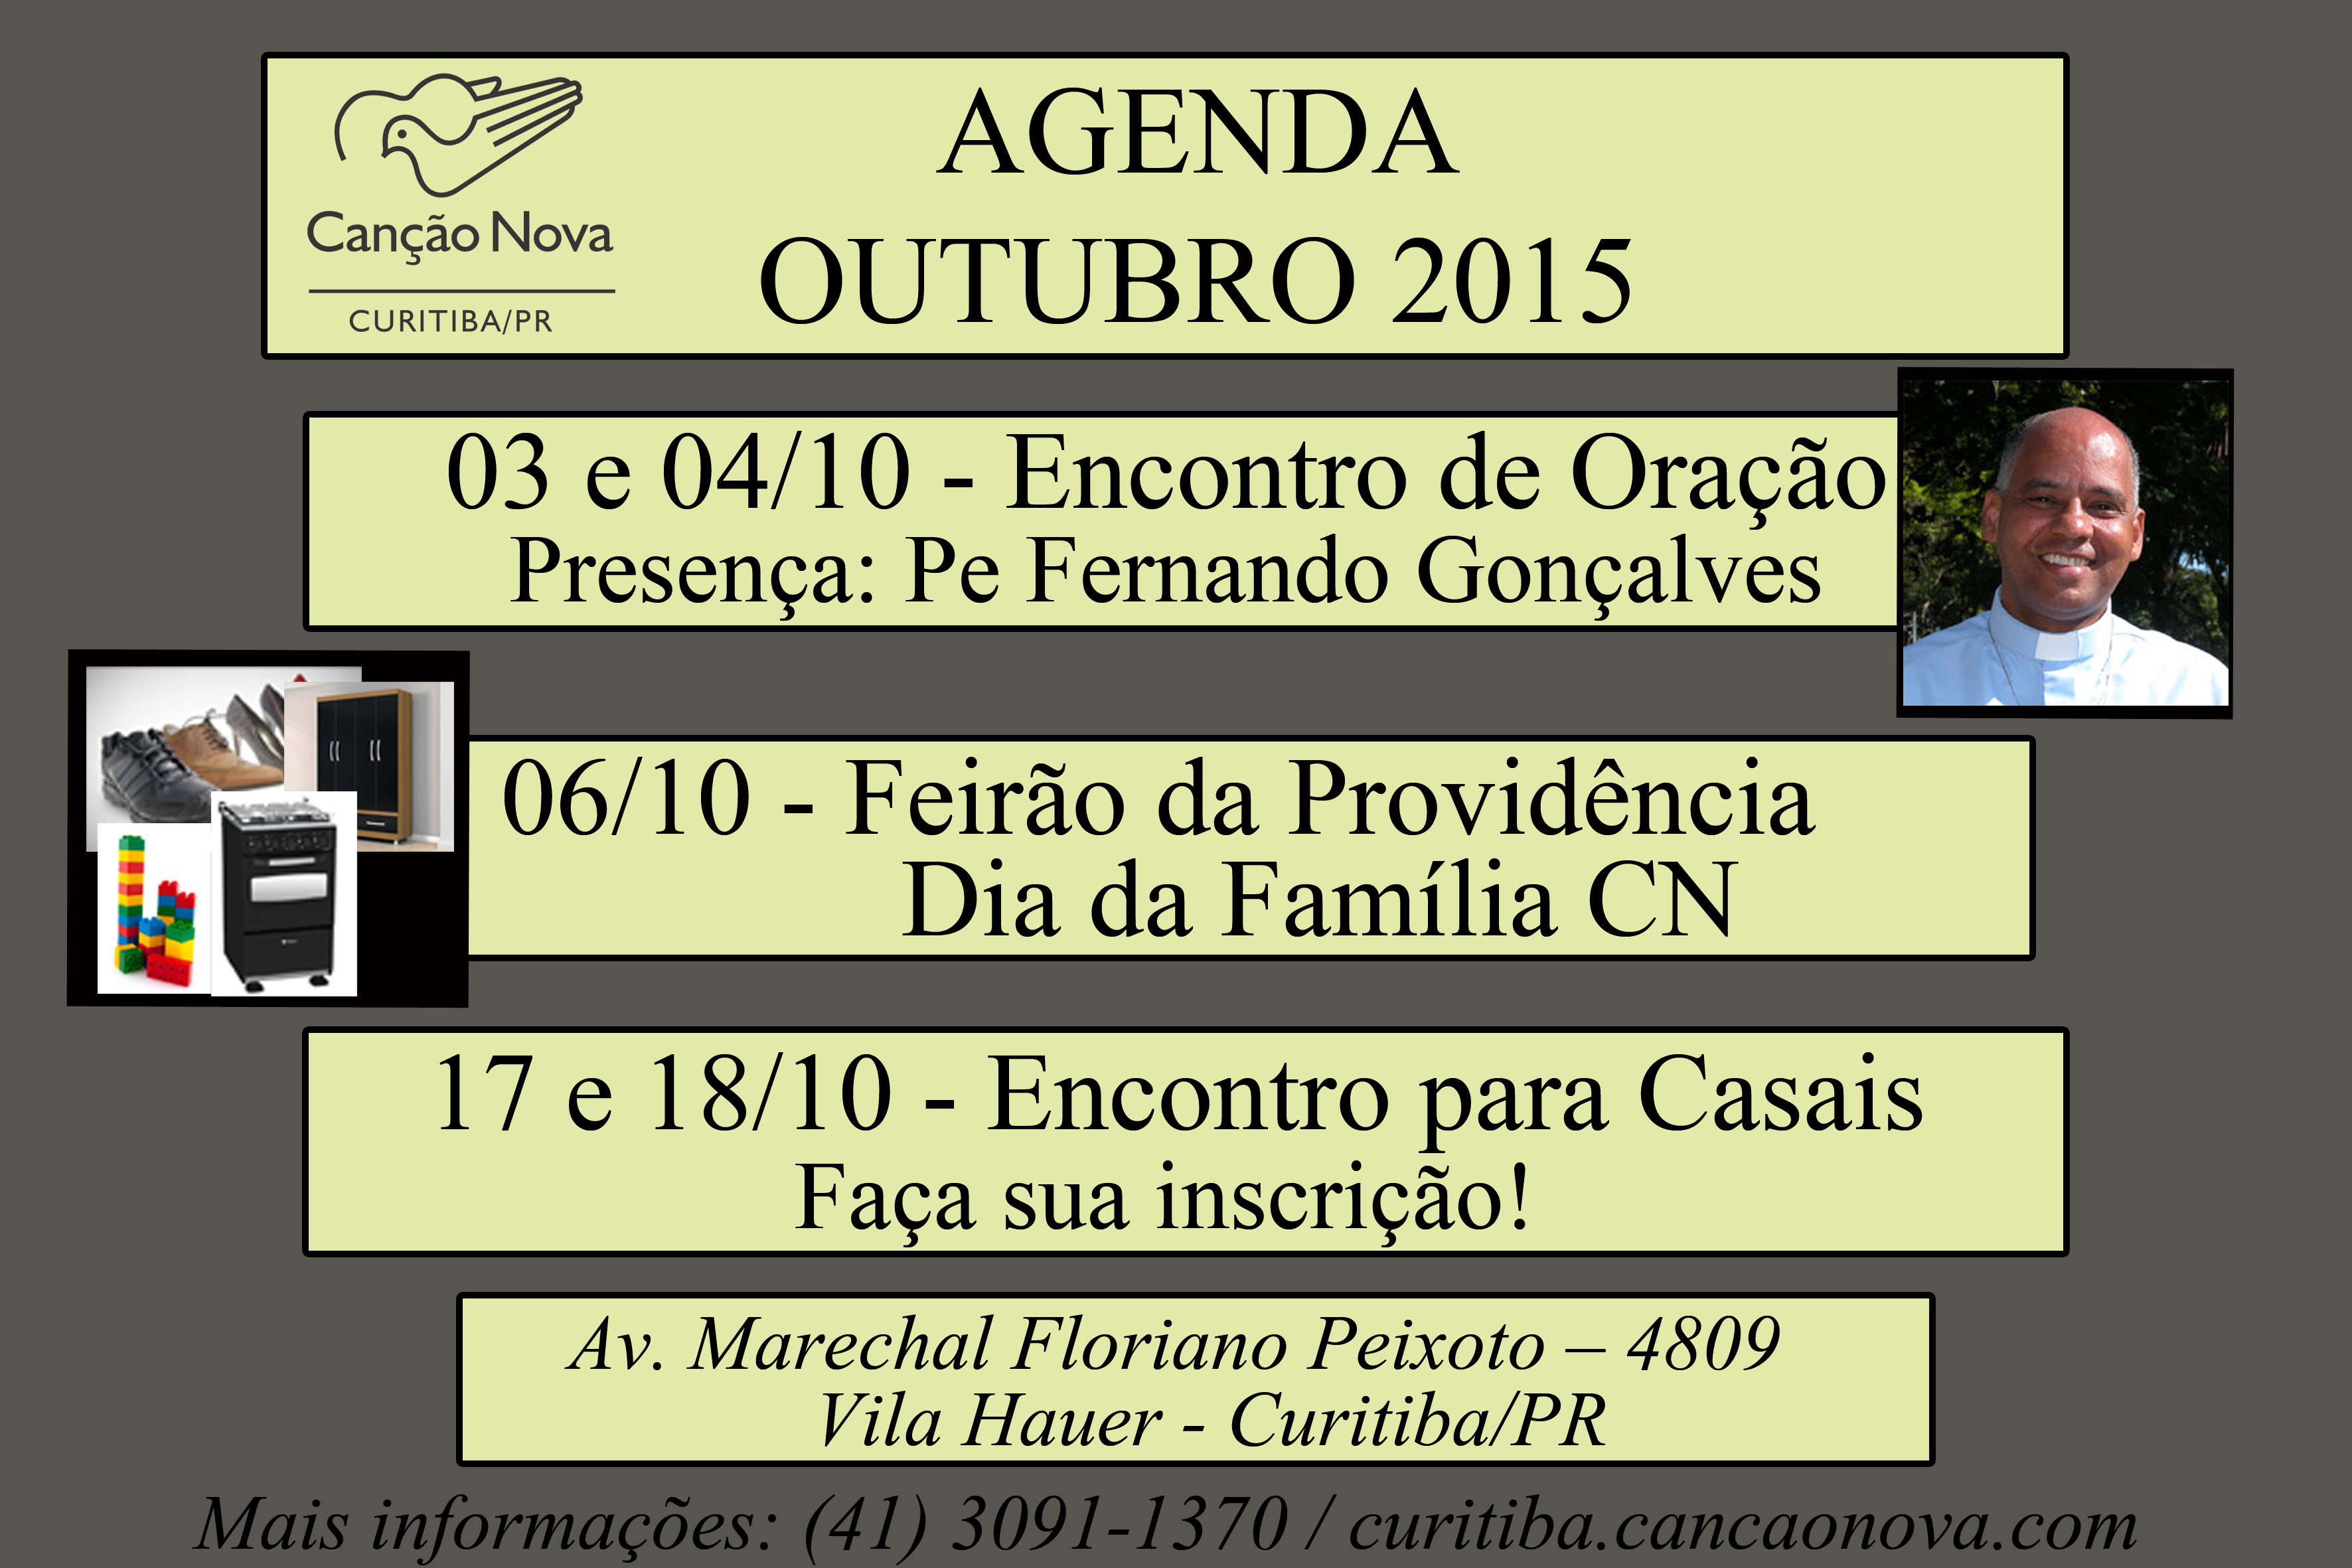 Agenda Outubro 2015